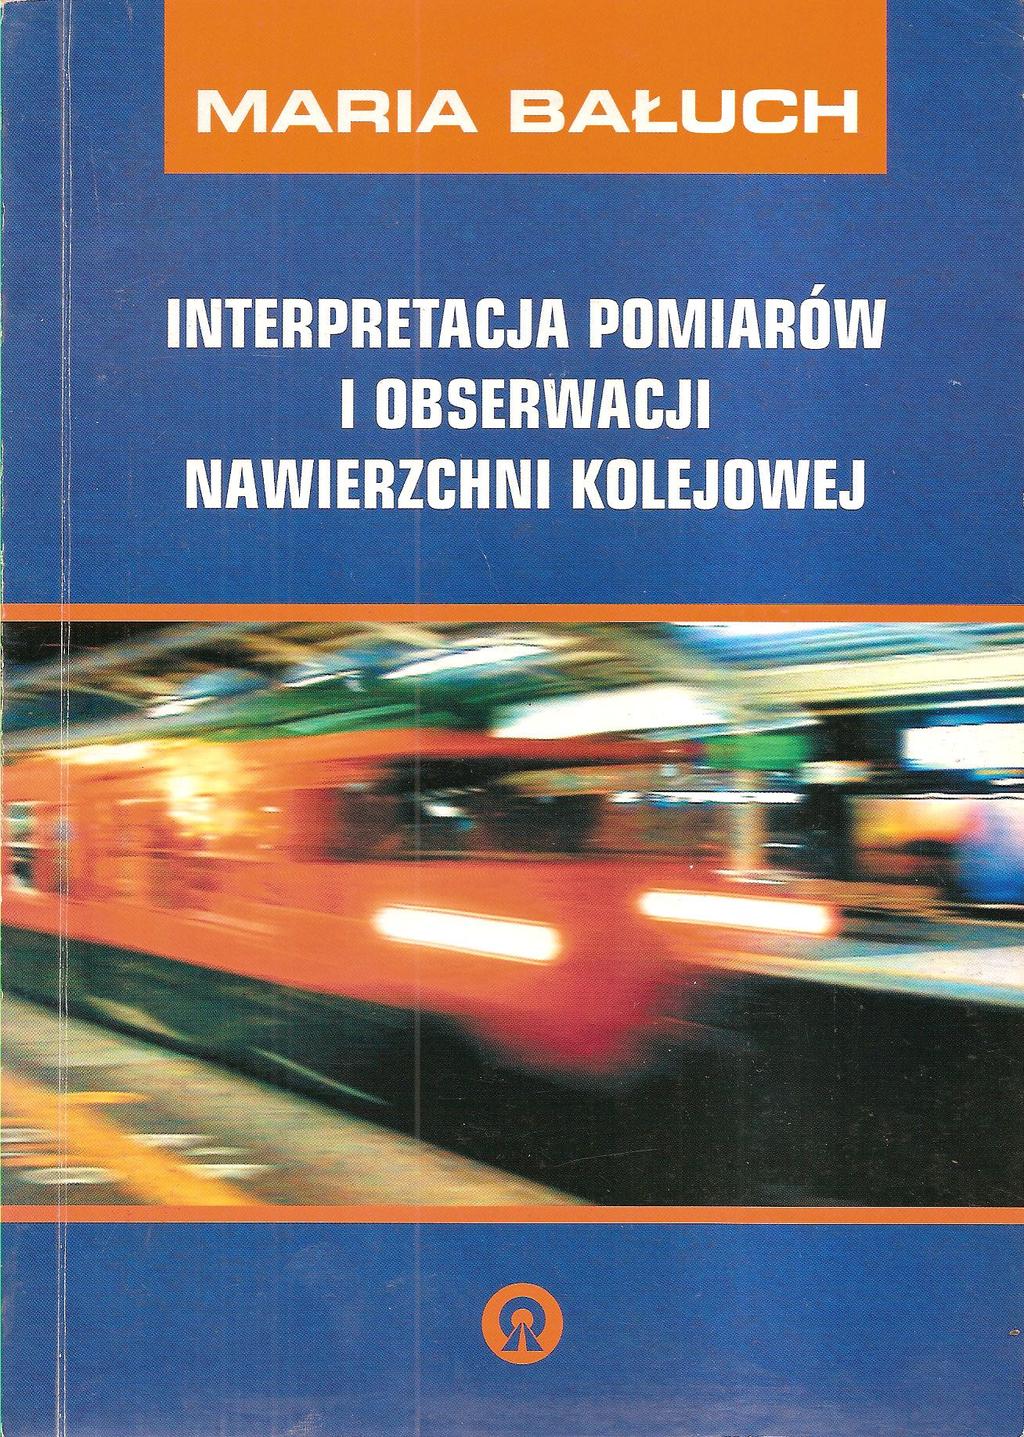 Bałuch M.: Interpretacja pomiarów i obserwacji nawierzchni kolejowej, Politechnika Radomska 2005 1. 2. 3. 4. 5. 6. 7. 8. 9. 10.